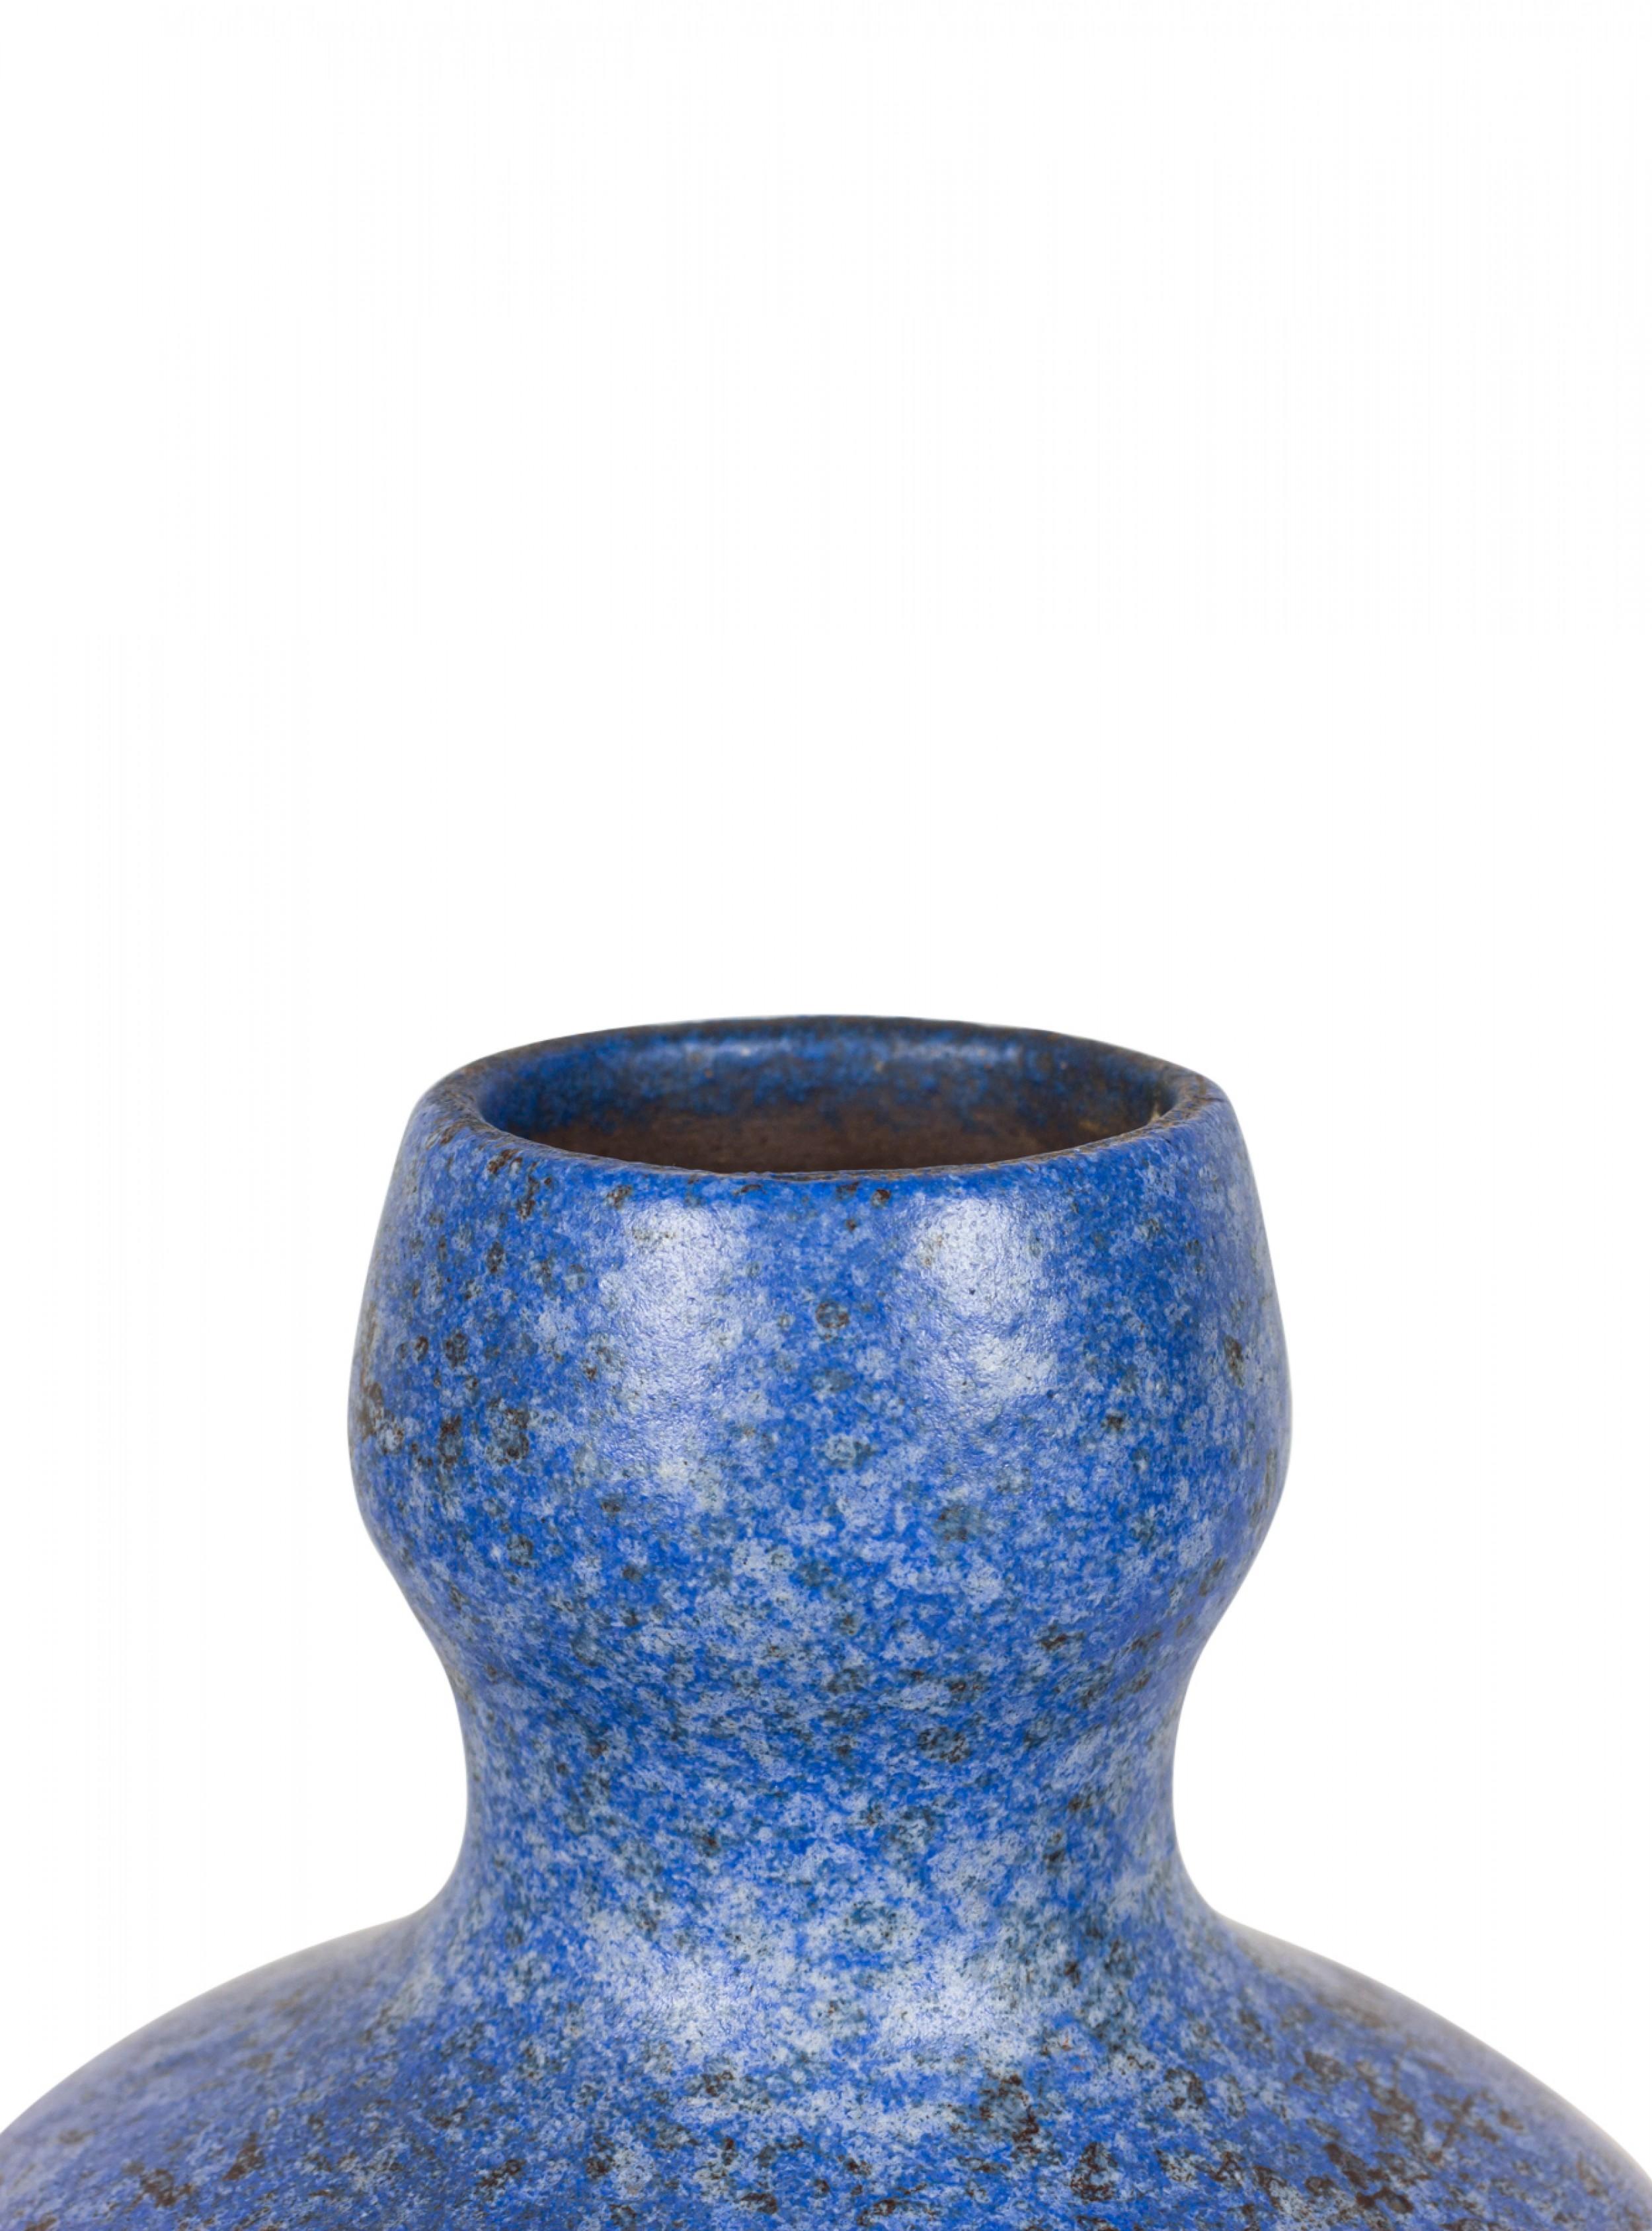 East German Mid-Century bottle-form ceramic vase with a speckled blue glaze. (stamped on bottom, STREHLA 7432).